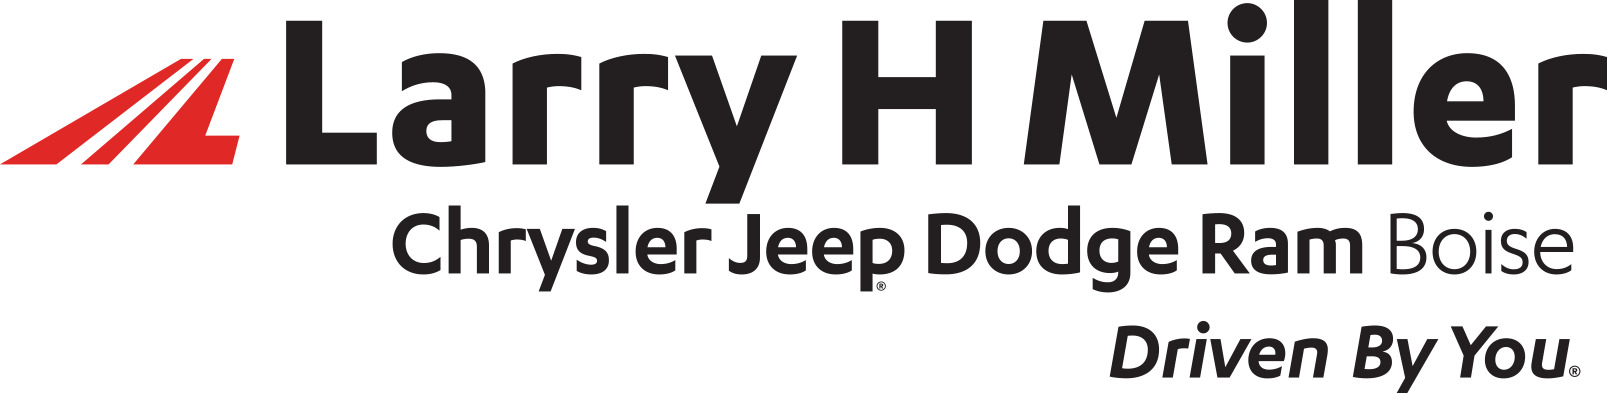 Larry H. Miller Chrysler Jeep Dodge